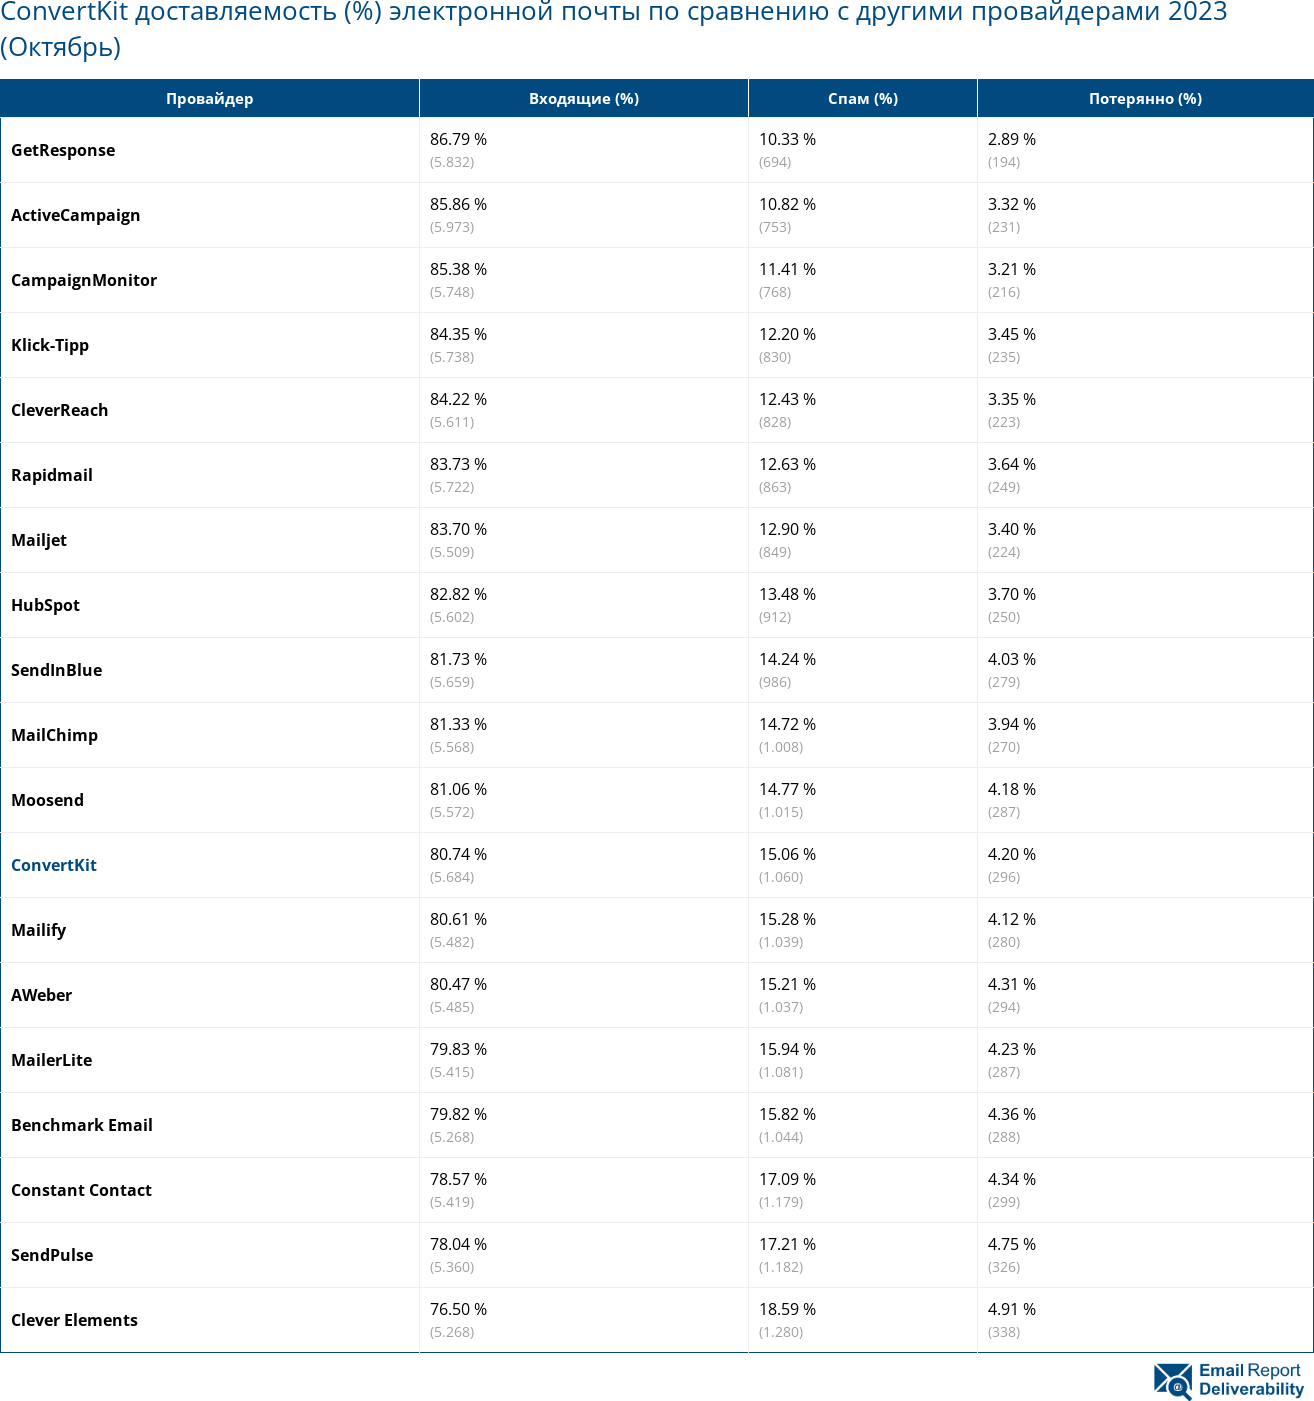 ConvertKit доставляемость (%) электронной почты по сравнению с другими провайдерами 2023 (Октябрь)